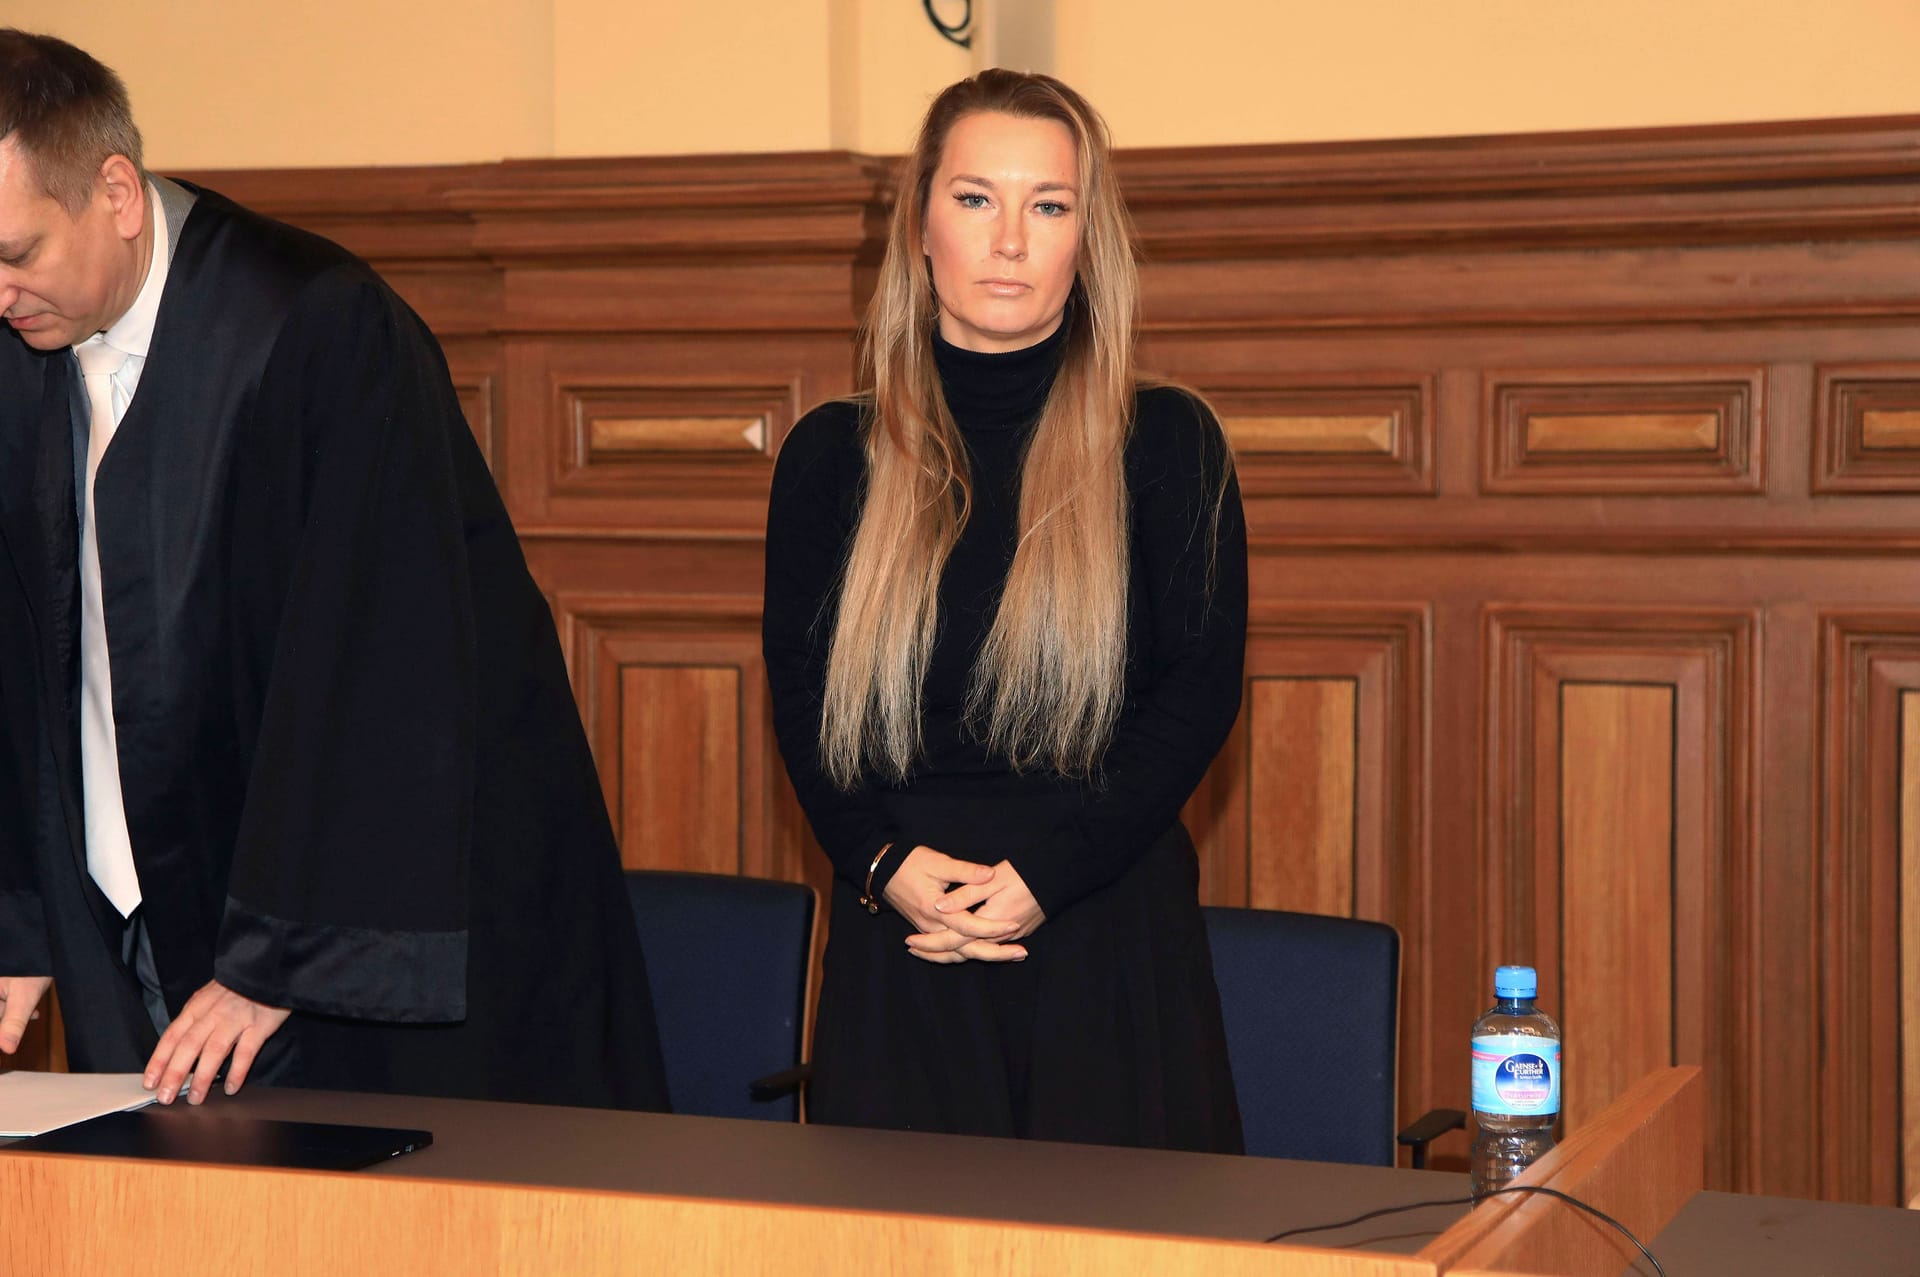 Anja Rascher bei der Gerichtsverhandlung wegen des Vorwurfs der sexuellen Belästigung gegen Marc Terenzi